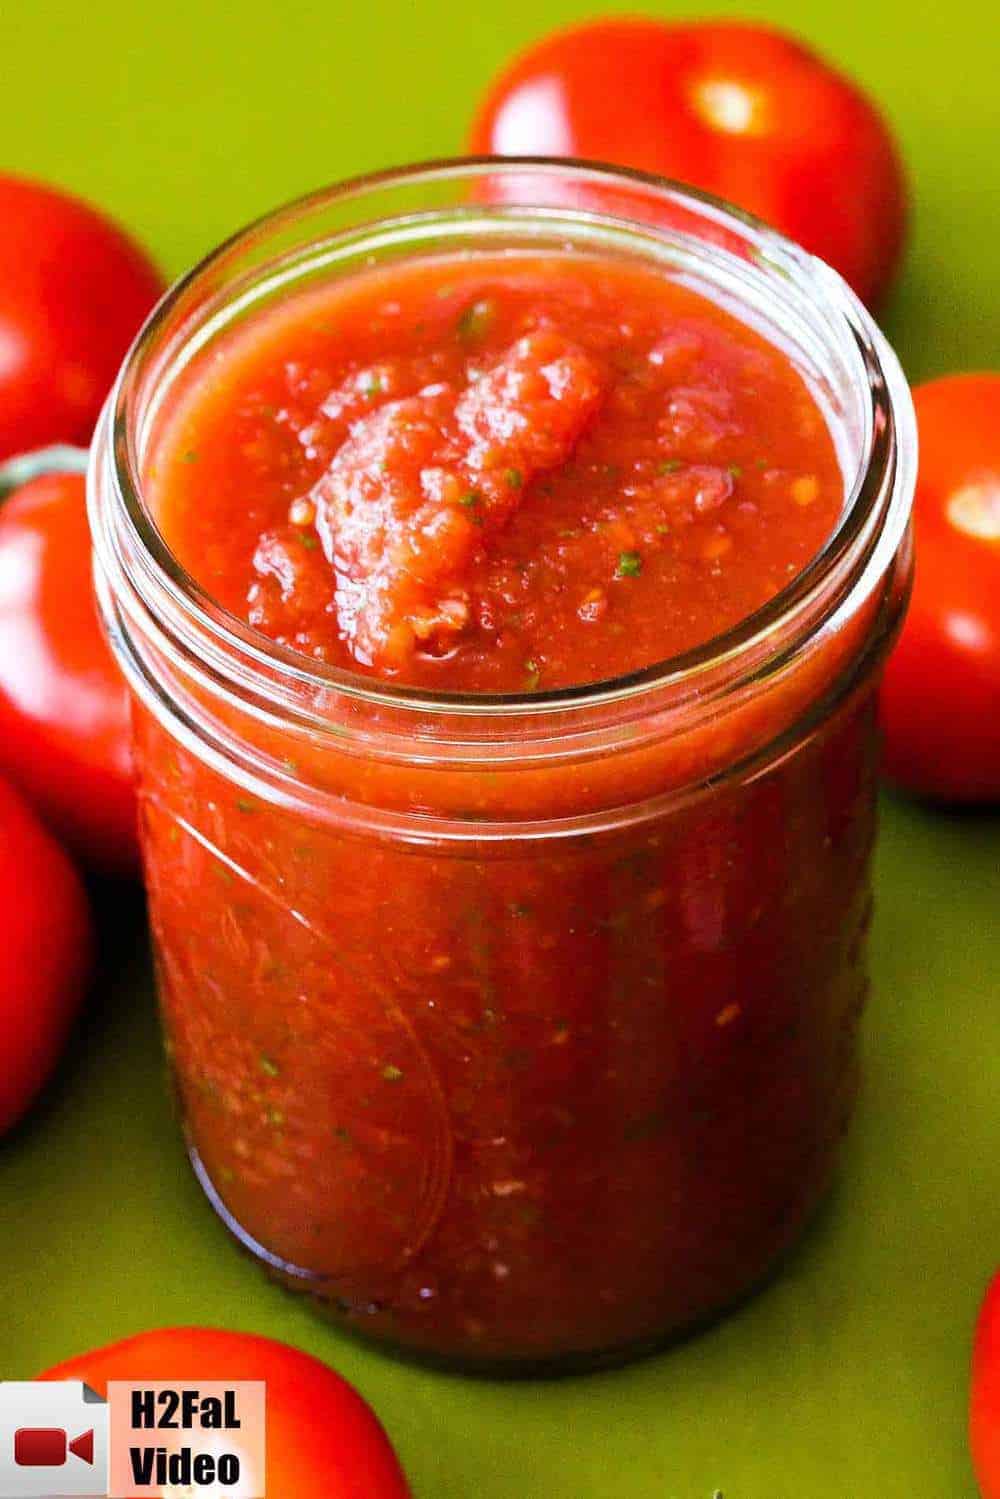 Restaurant-quality salsa in a jar on a green board